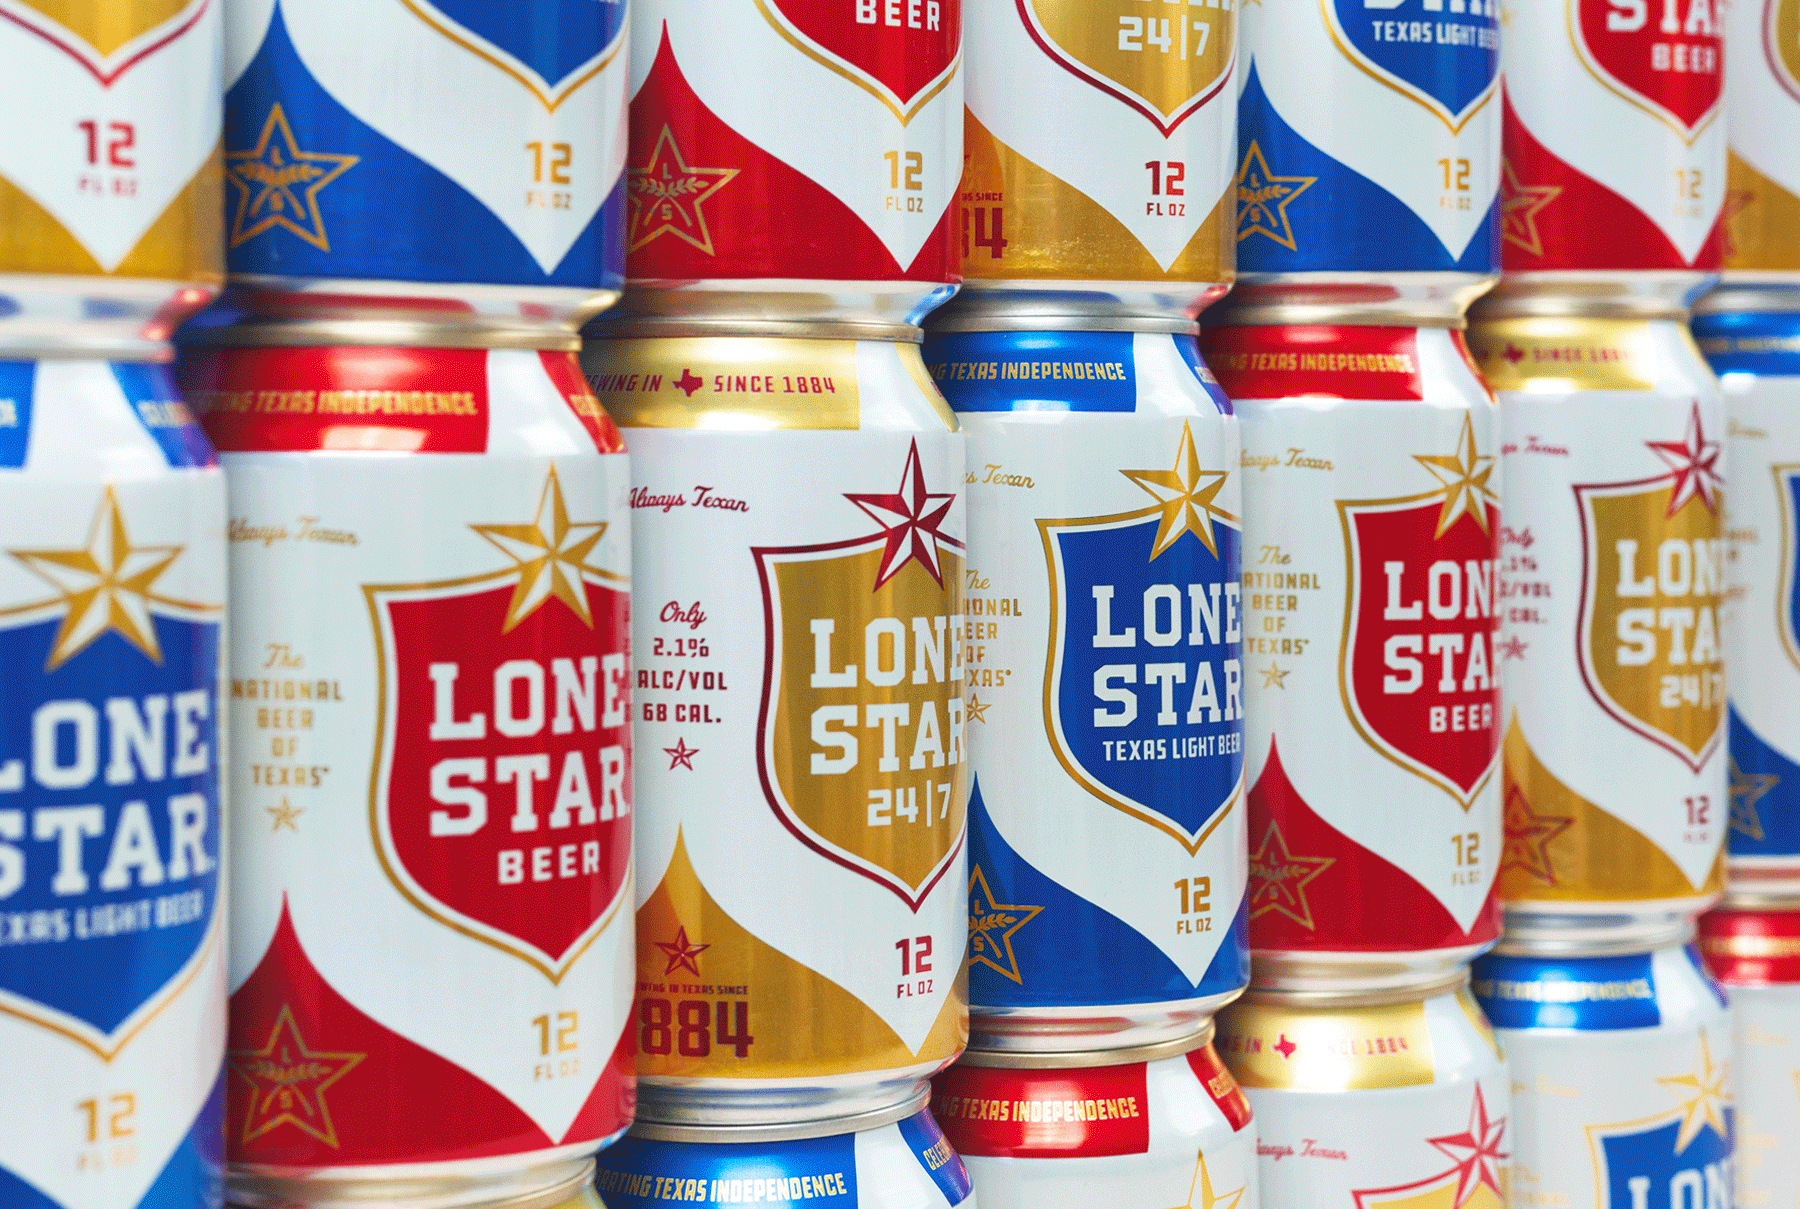 Beer & Branding: Lone Star